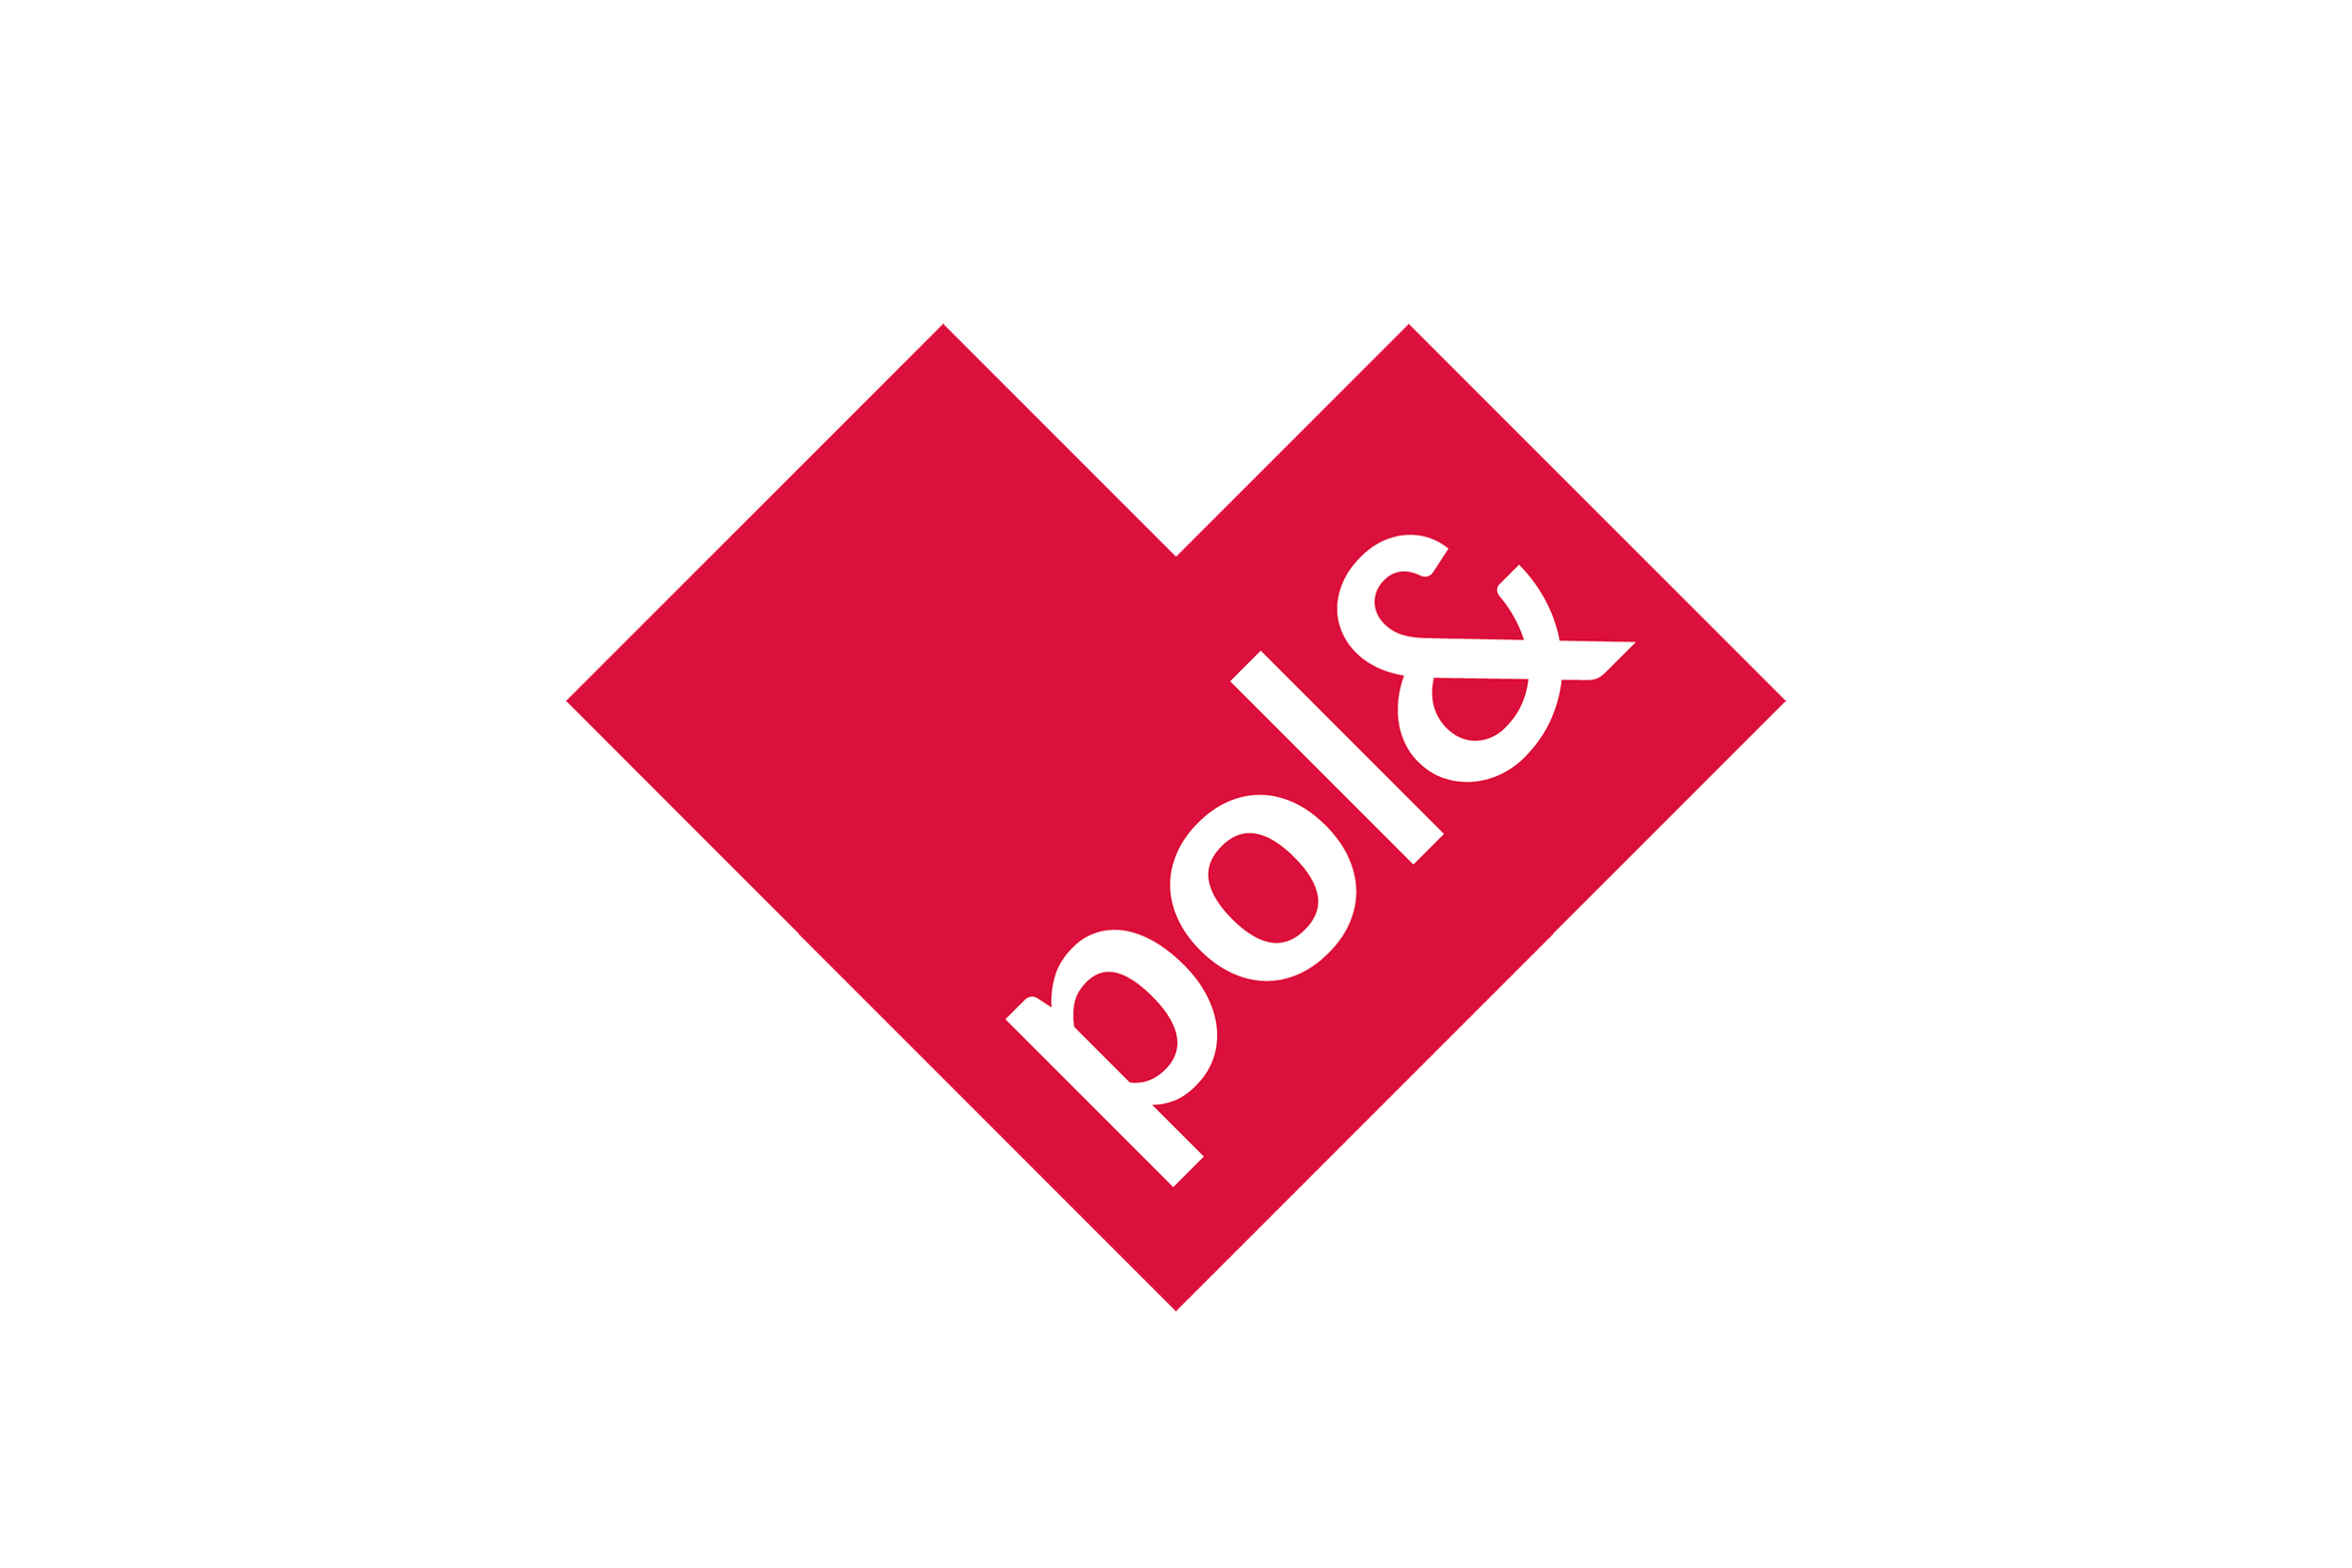 Poland Logo - Love Poland Logo / Poland Promotion Logo Design Concept